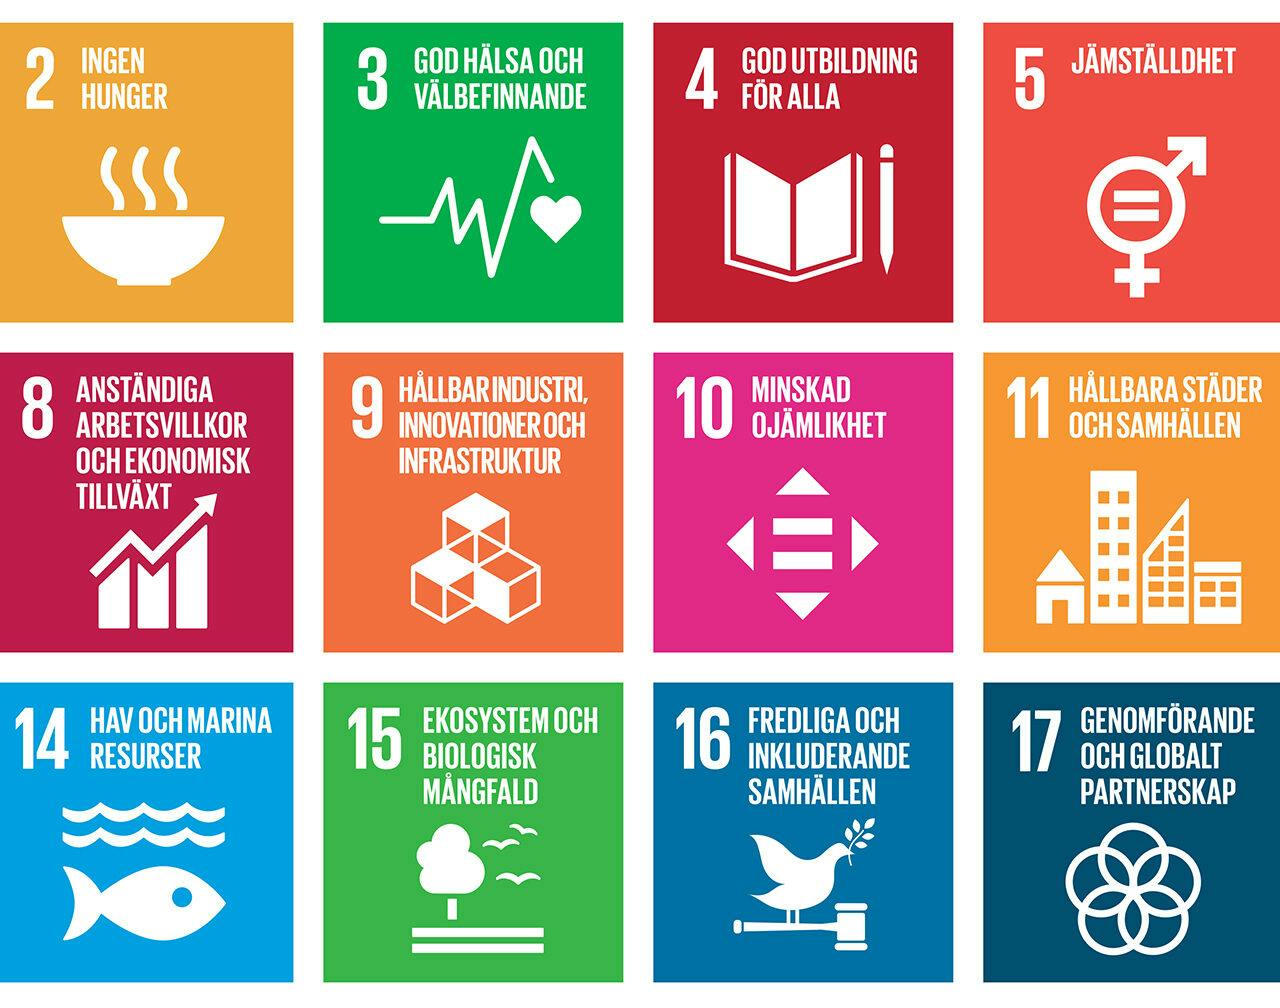 SDG, Agenda 2030, Global, mål, hållbar, utveckling, utvecklingsmål, FN, fattigdom, hunger